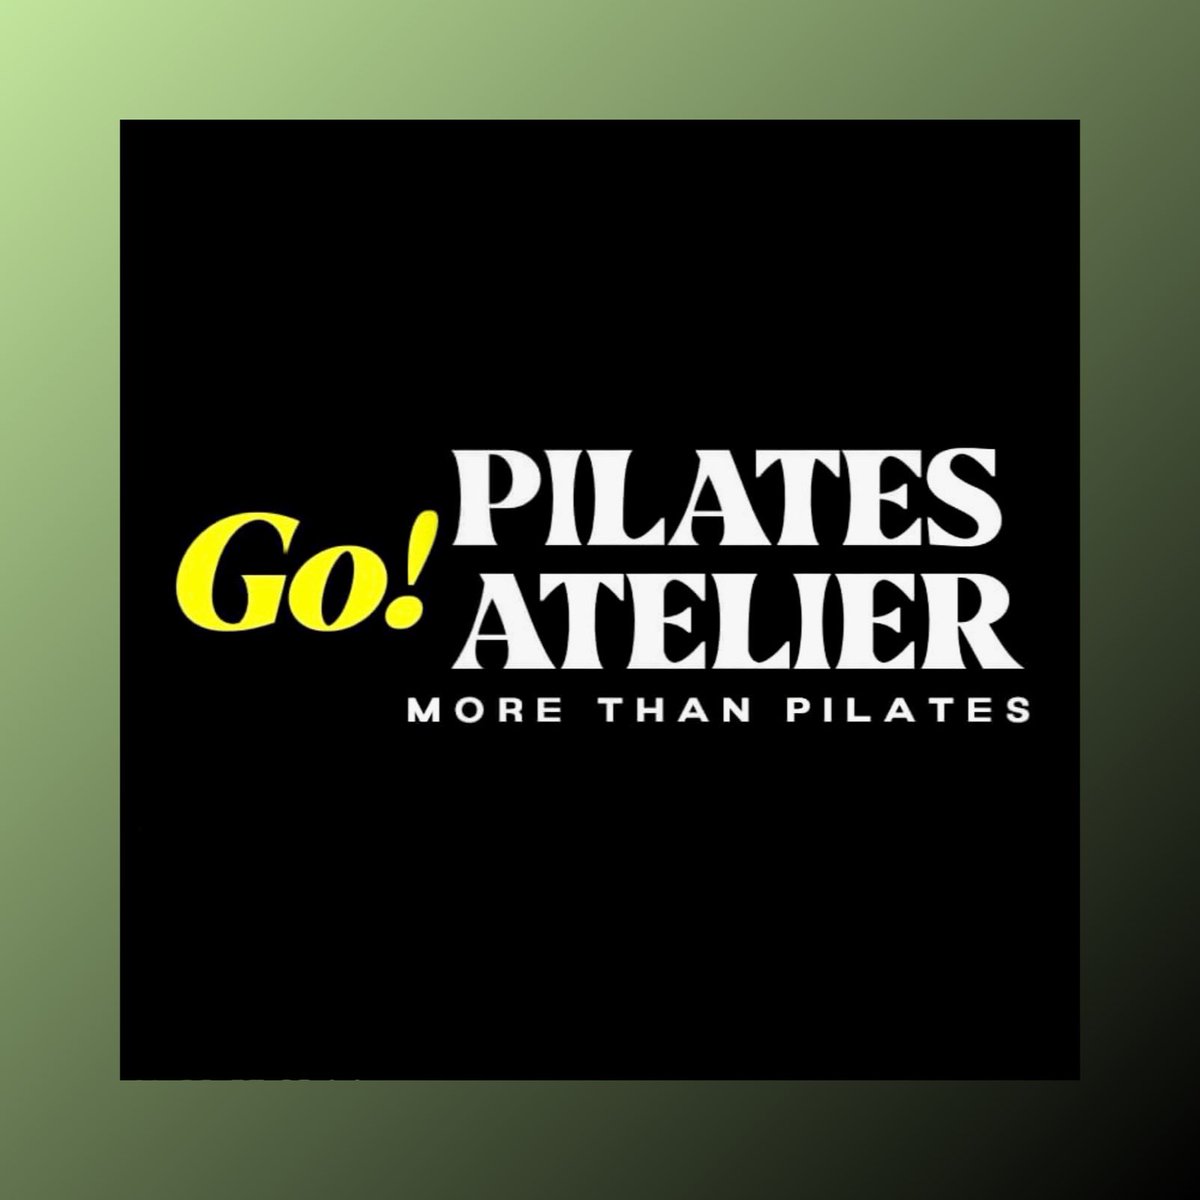 🎉 New Partner Announcement : We are deligthed to welcome Pilates Atelier from Menton in the WiiKlin network. 
🎉 Annonce Nouveau Partenaire : Nous sommes très heureux d'annoncer la venue de Pilates Atelier de Menton dans le réseau WiiKlin. #wiiklin #wiikliners #beatpollution